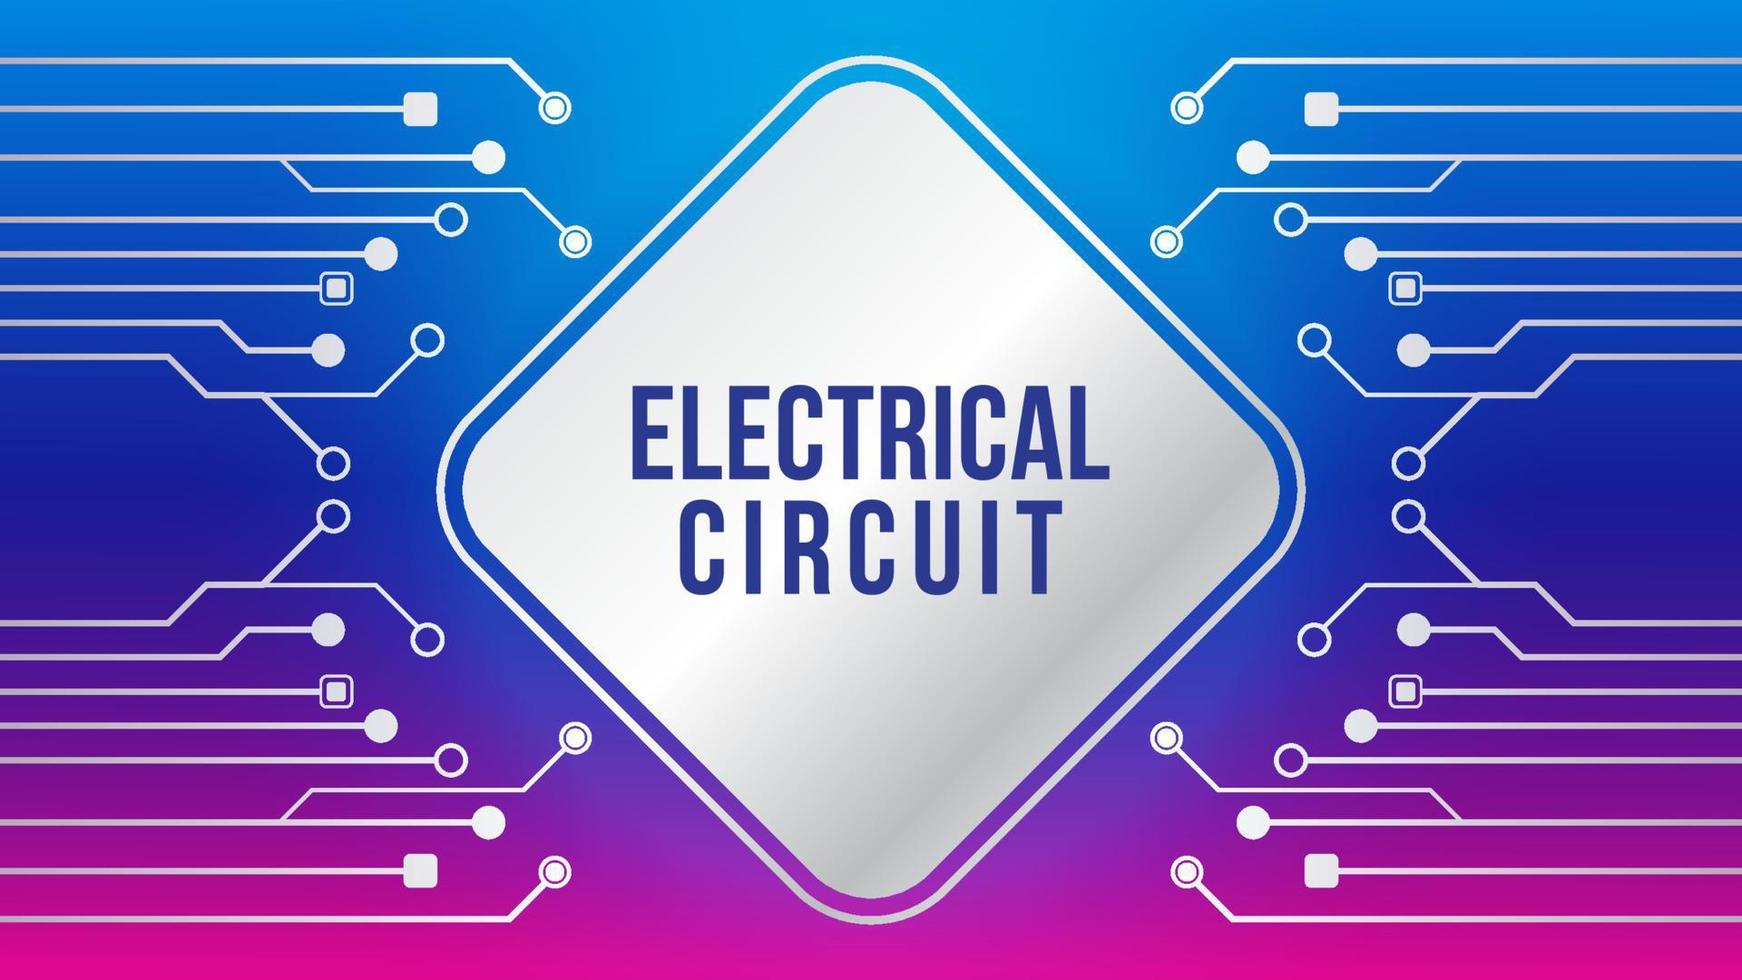 forme d'arbre électronique métallique avec élément carré arrondi sur fond coloré. illustration vectorielle de circuit électrique abstrait. modèle de thème de couleur dégradé violet violet bleu rose magenta vecteur